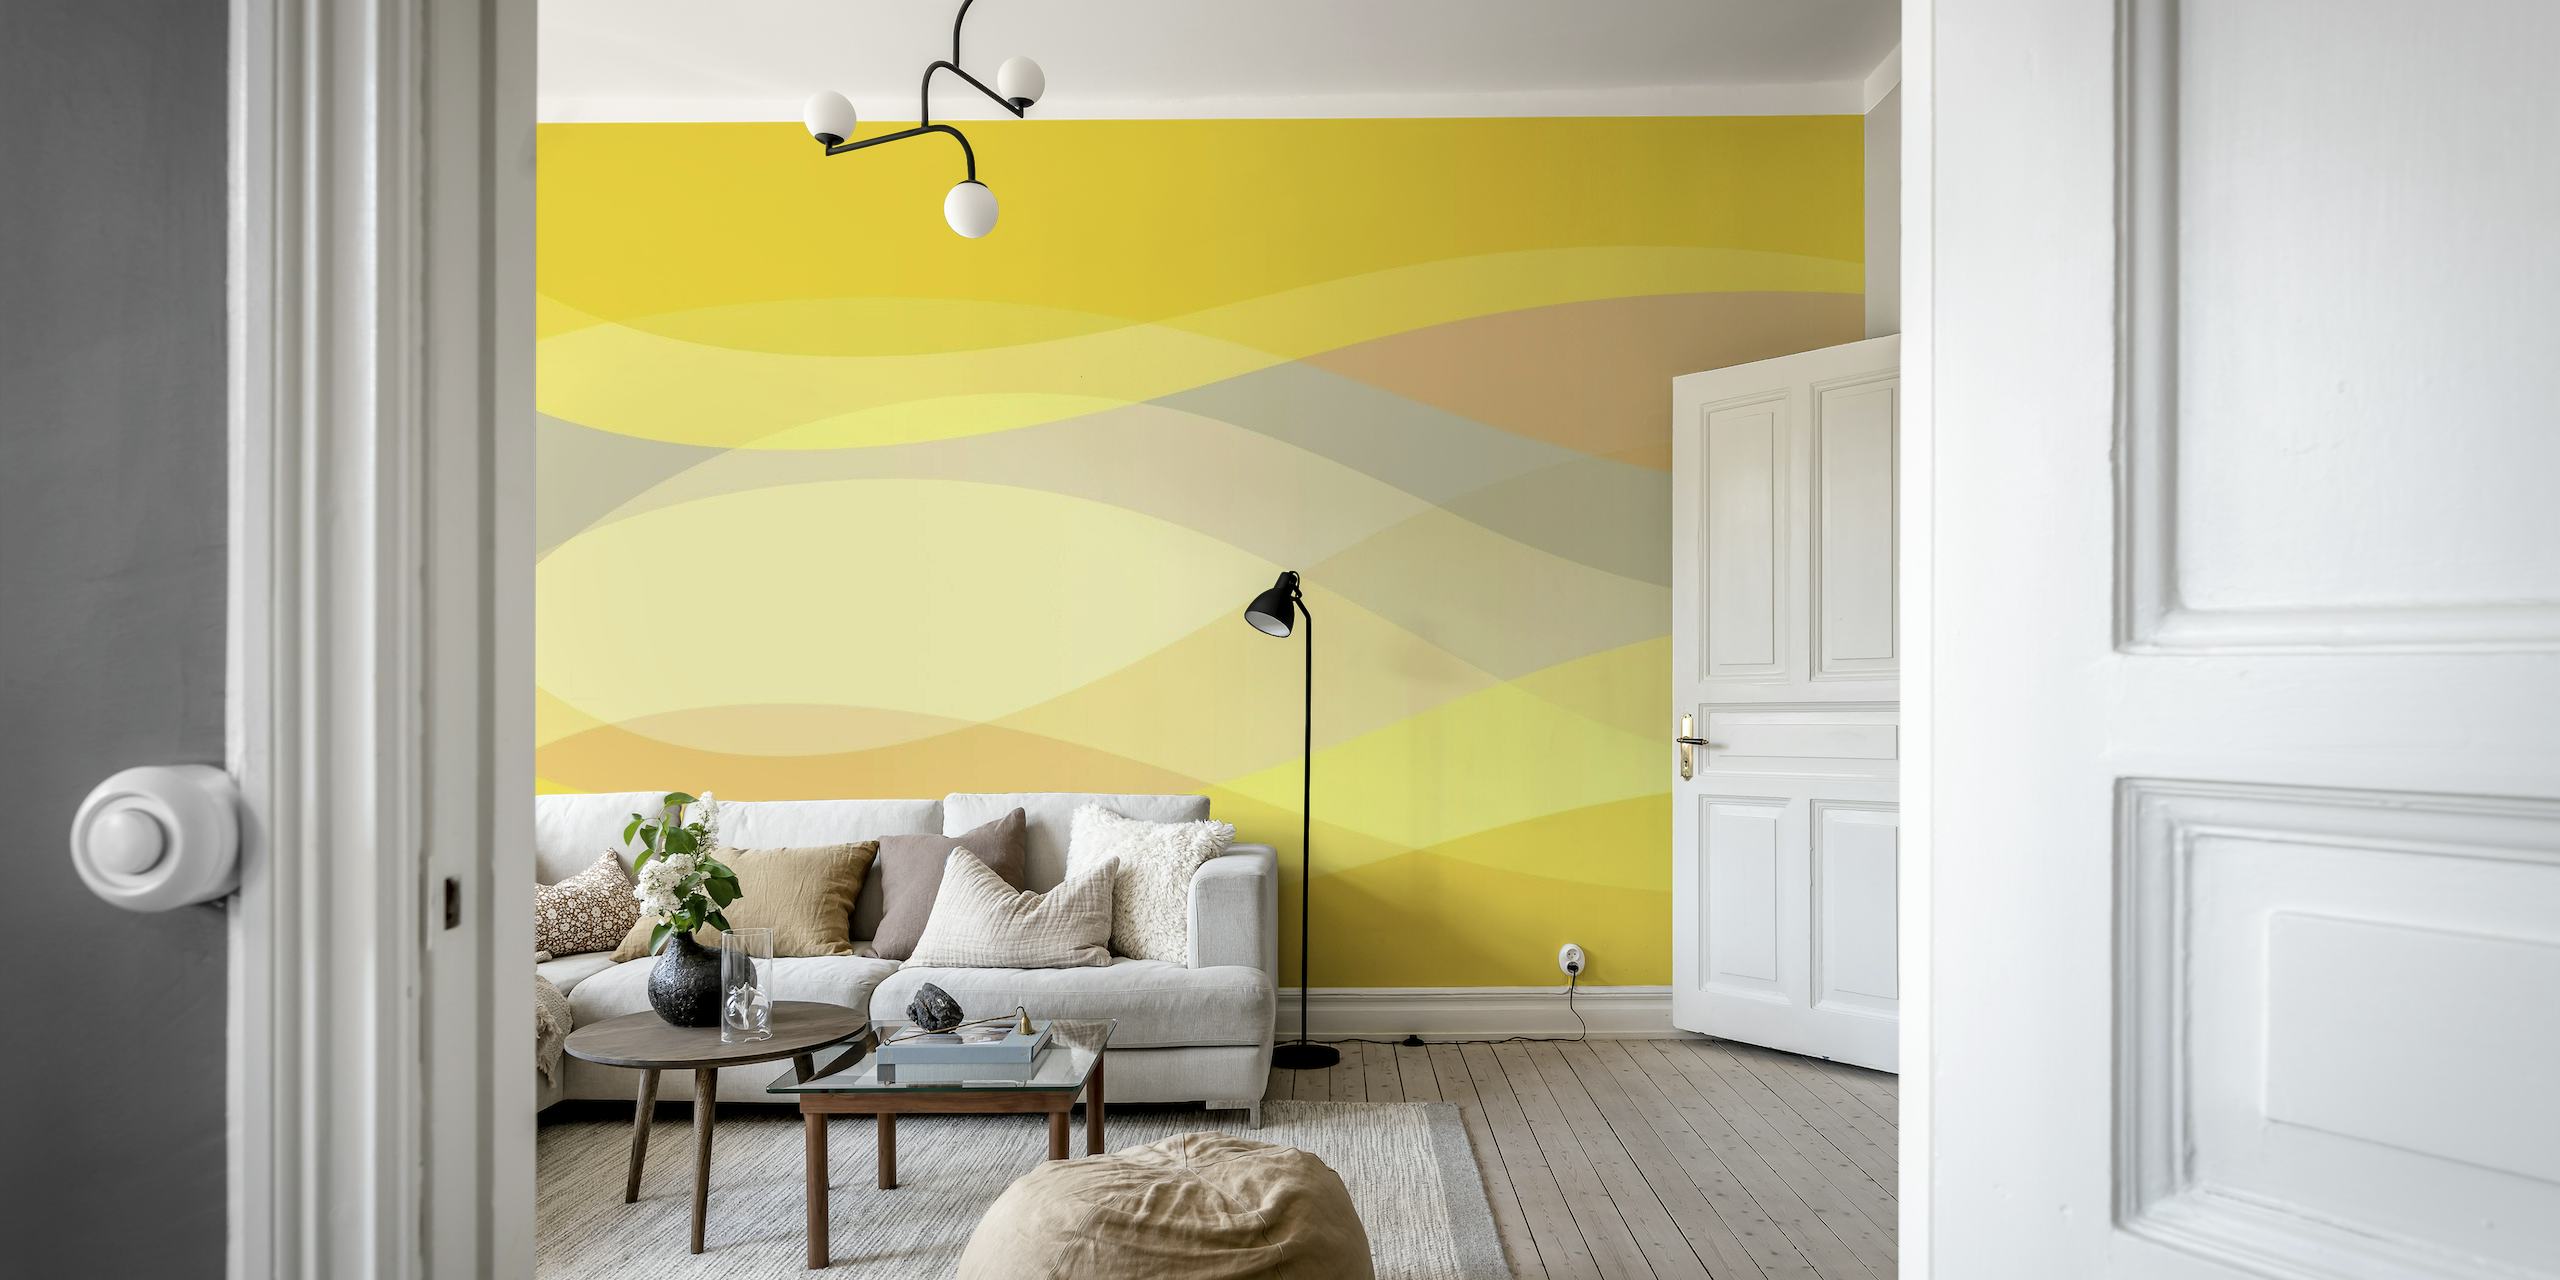 Fototapete mit abstrakten gelben Formen mit sanften Kurven und Pastelltönen